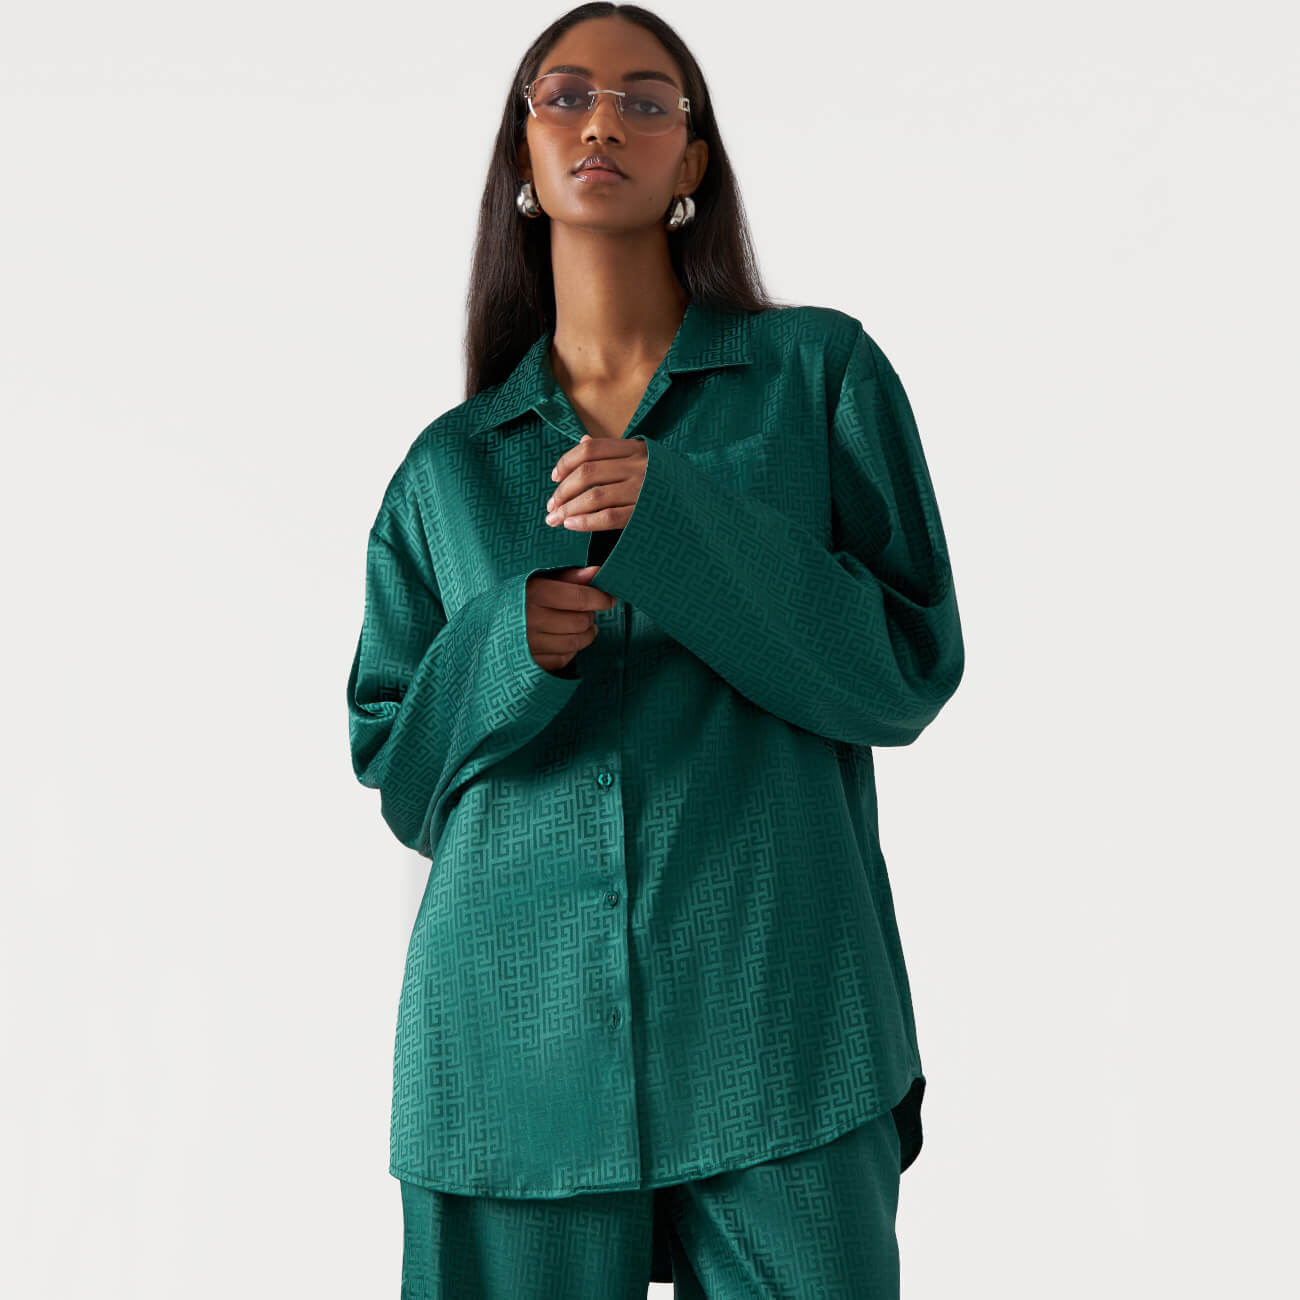 Рубашка женская, р. M, с длинным рукавом, полиэстер, зеленая, Жаккардовый узор, Agnia рубашка женская р l с длинным рукавом хлопок зеленая teona